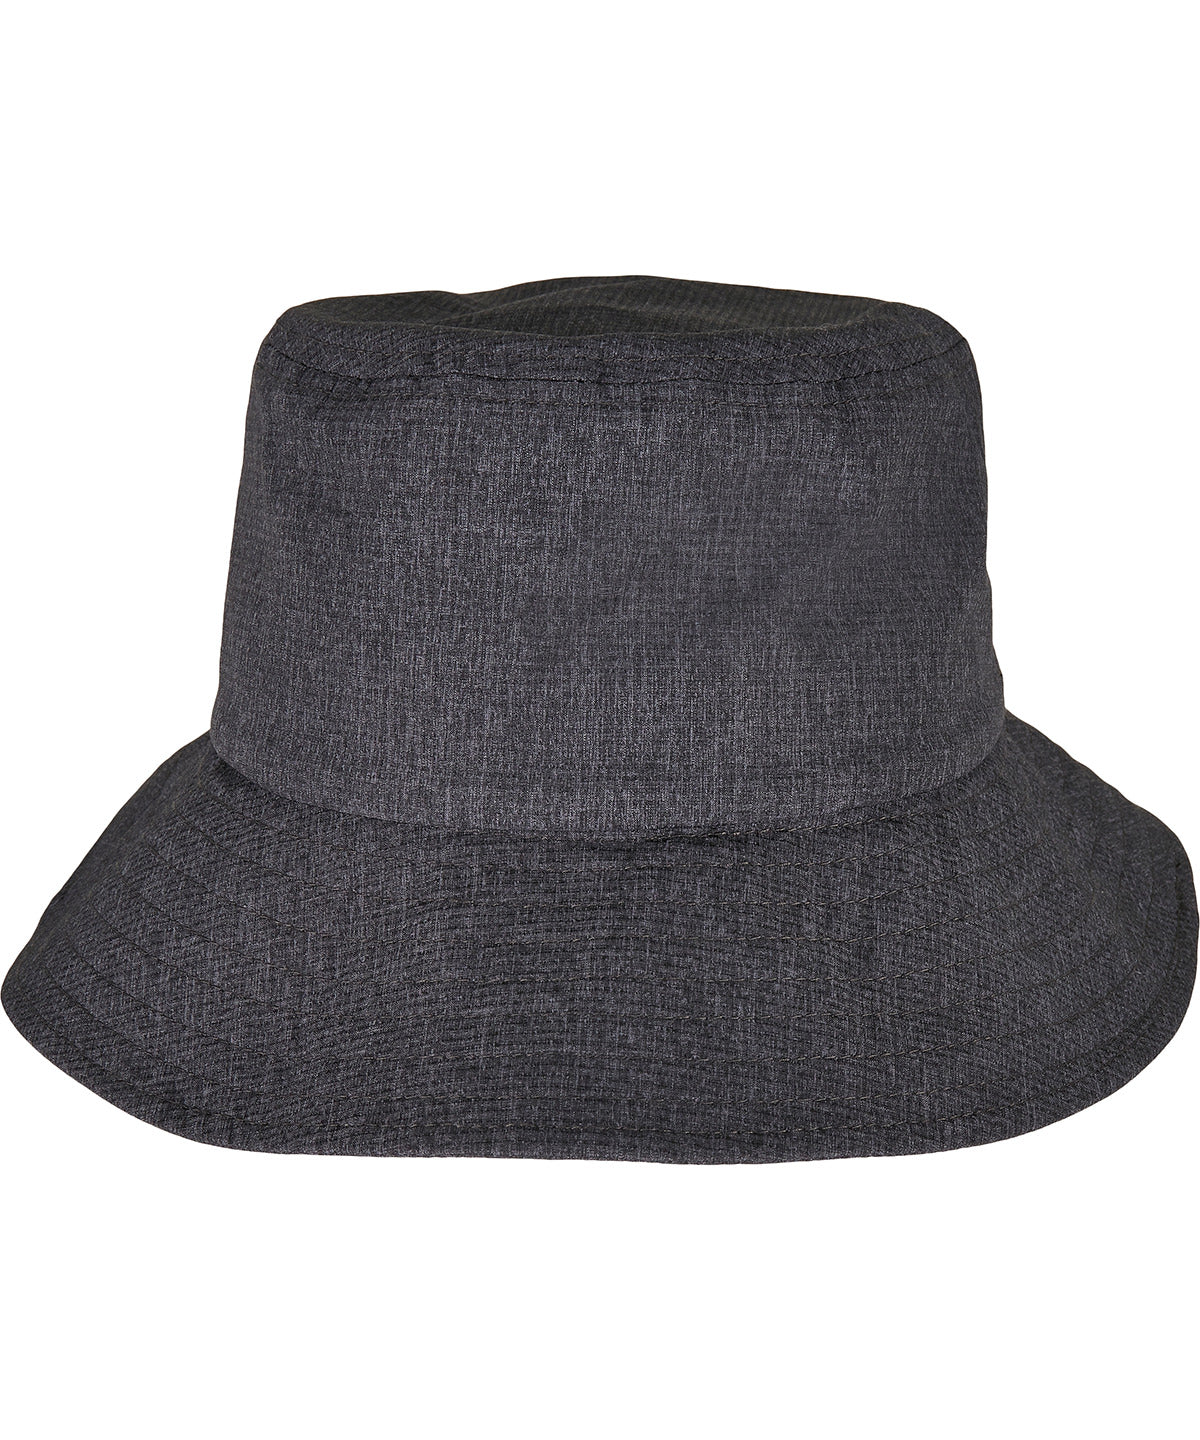 Húfur - Adjustable Flexfit Bucket Hat (5003AB)